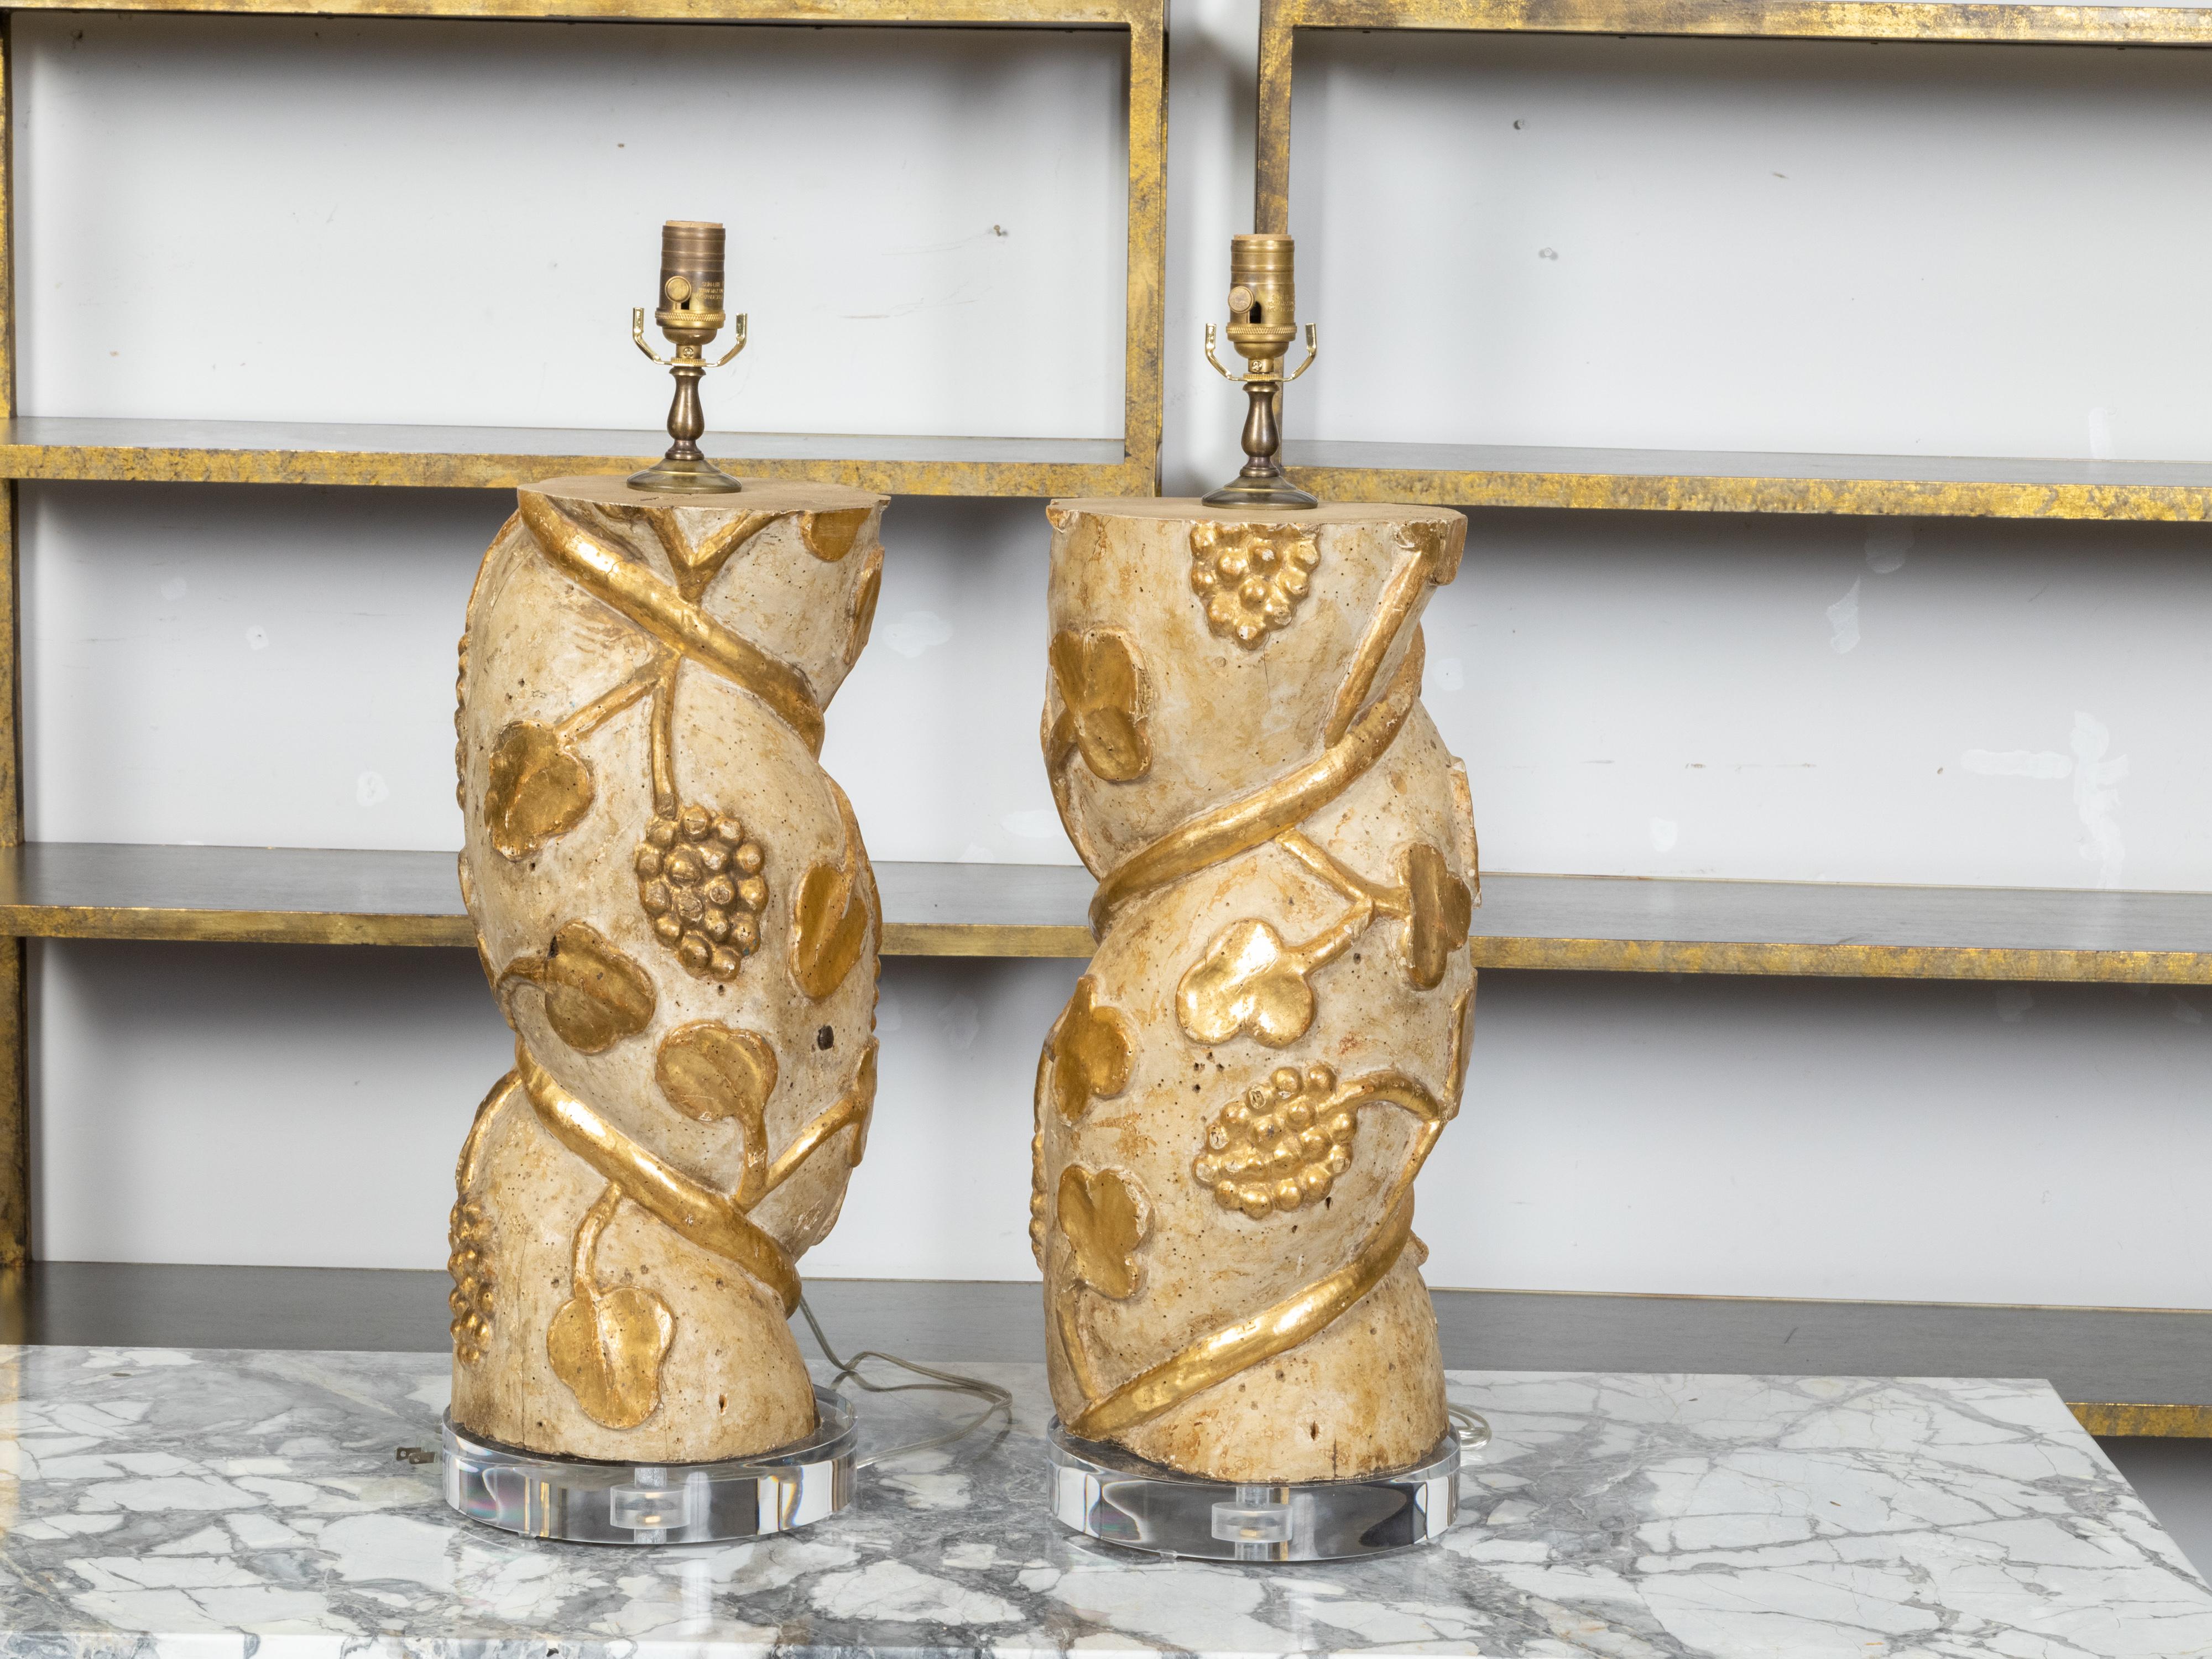 Une paire de fragments de colonnes torsadées italiennes en bois du 18ème siècle, avec des motifs de vigne en bois doré sculpté et des bases rondes en lucite. Créée en Italie au XVIIIe siècle, cette paire de fragments de bois peints en crème présente